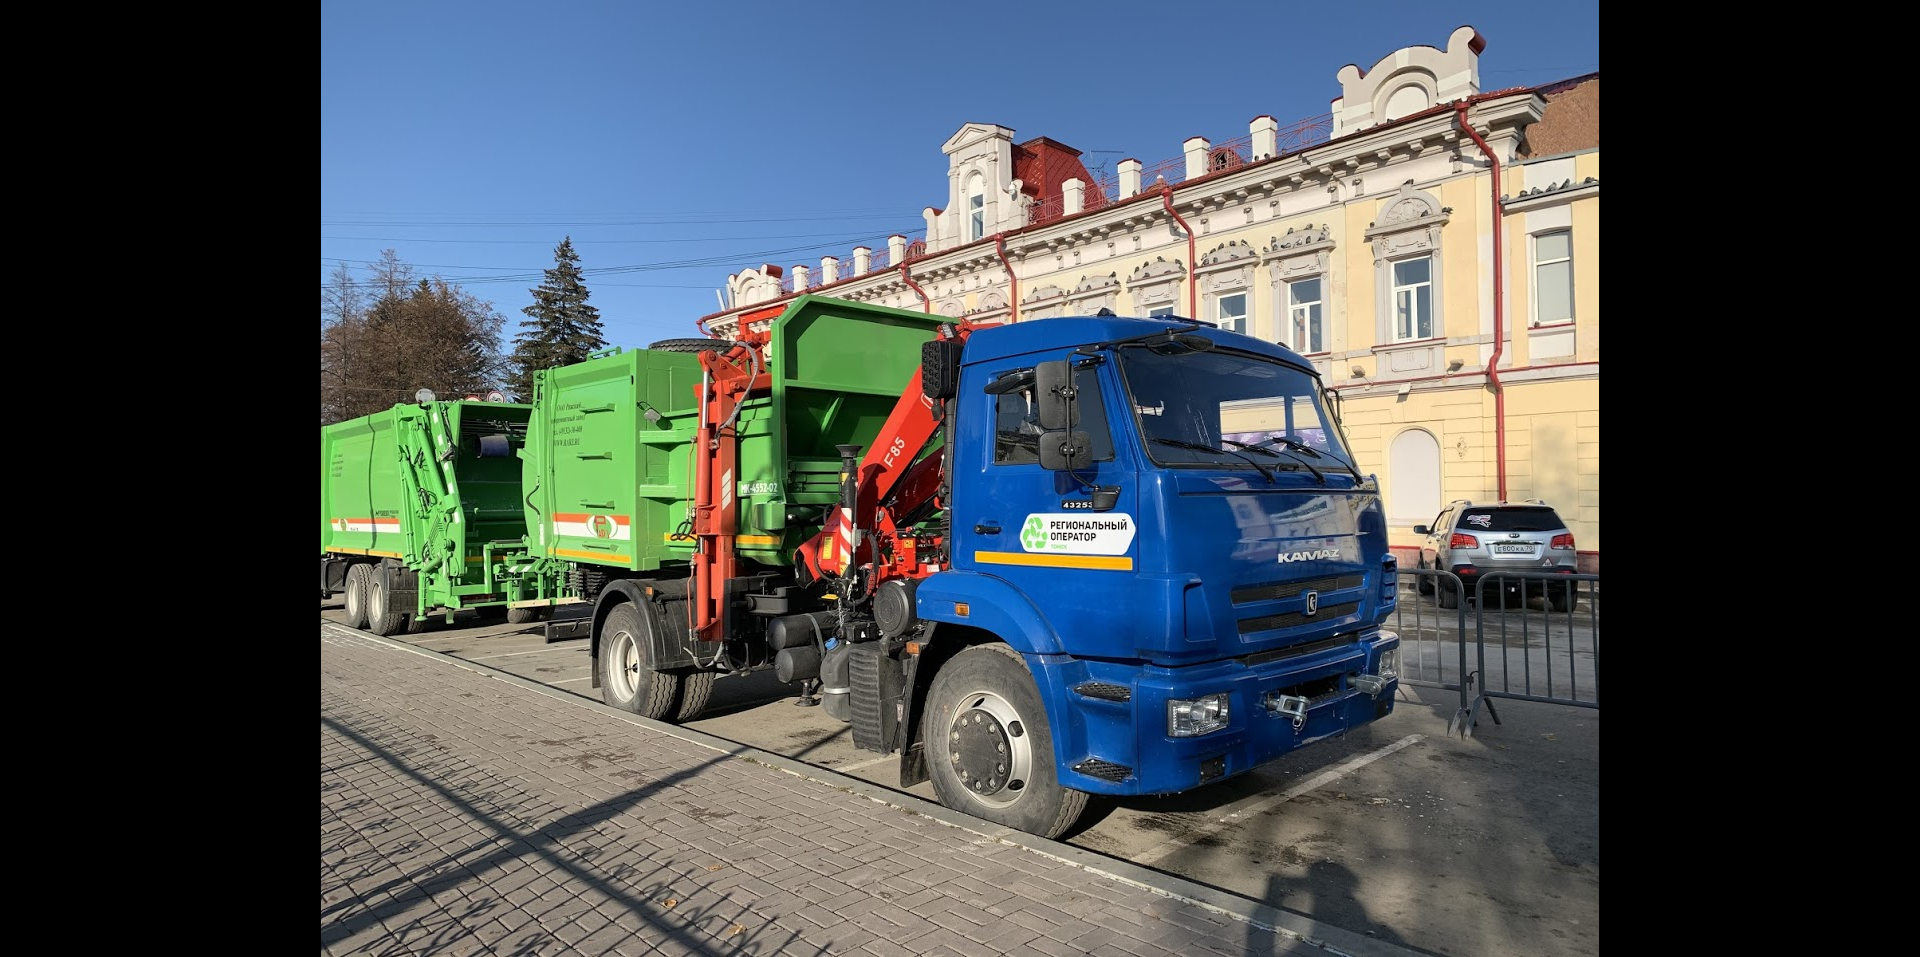 Жители города Томска пожаловались на плохую уборку снега